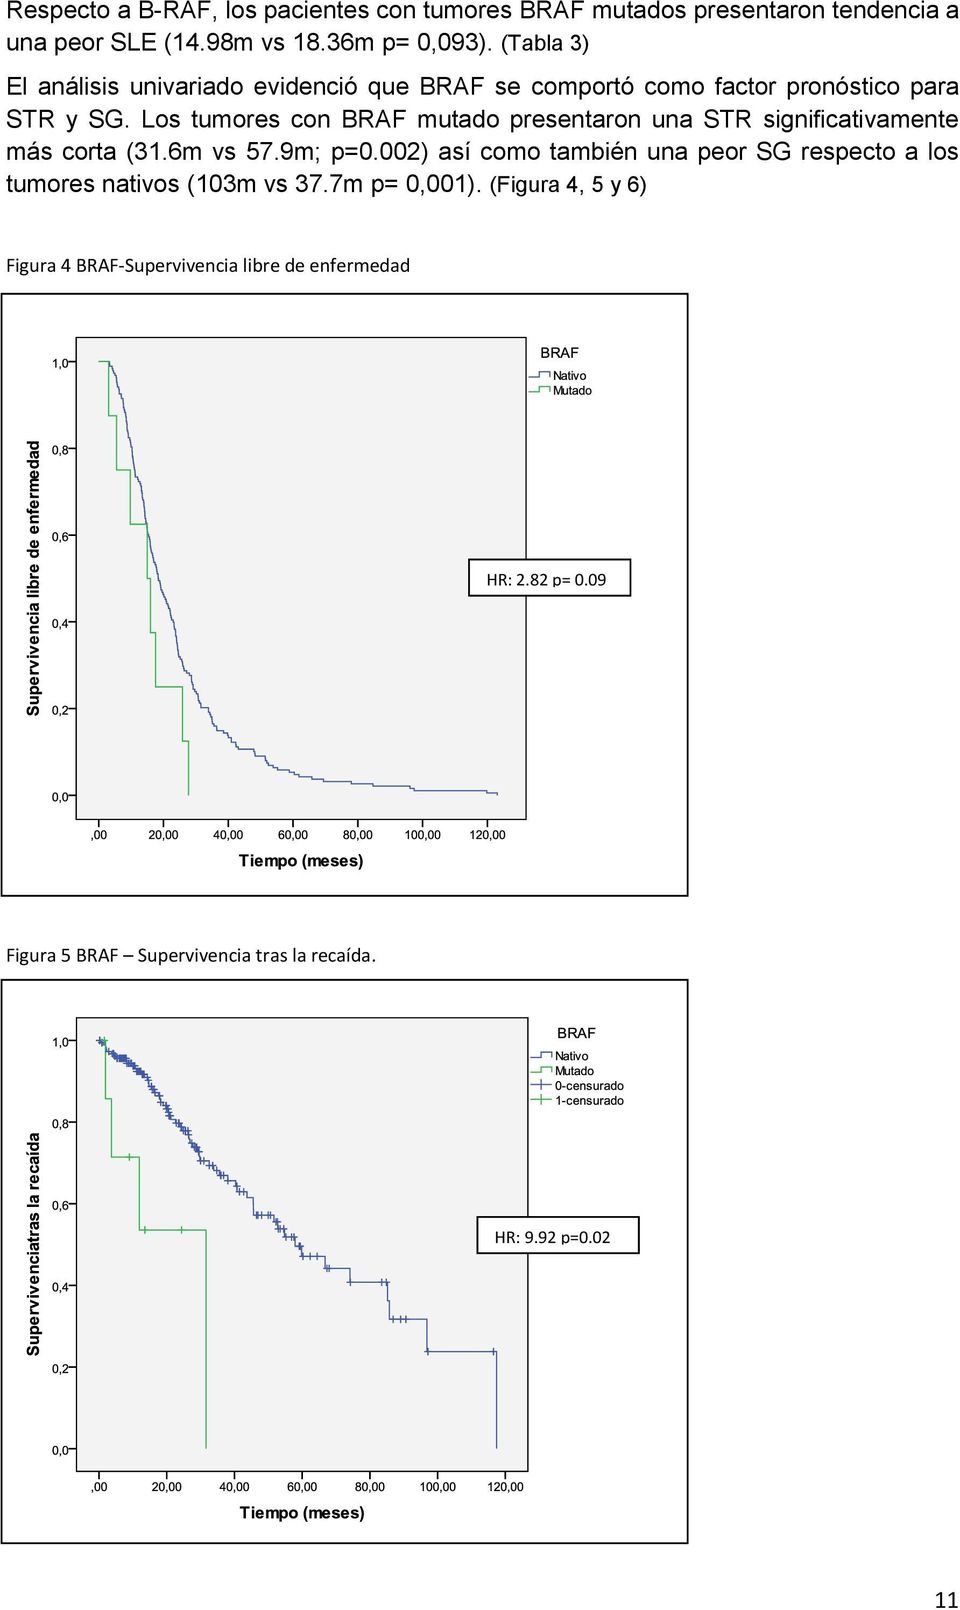 Los tumores con BRAF mutado presentaron una STR significativamente más corta (31.6m vs 57.9m; p=0.